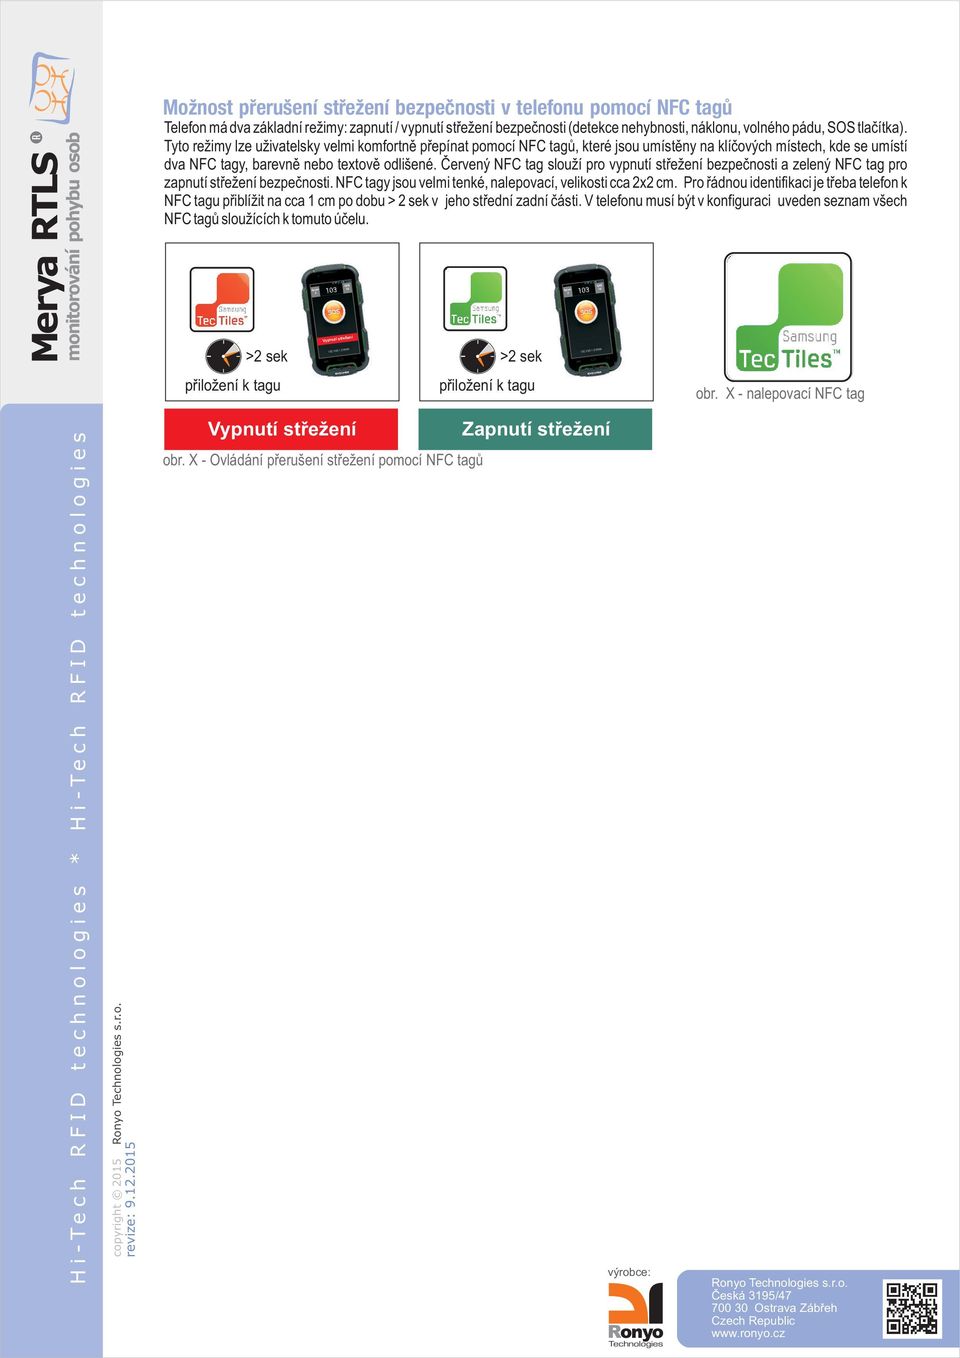 Èervený NFC tag slouží pro vypnutí støežení bezpeènosti a zelený NFC tag pro zapnutí støežení bezpeènosti. NFC tagy jsou velmi tenké, nalepovací, velikosti cca x cm.